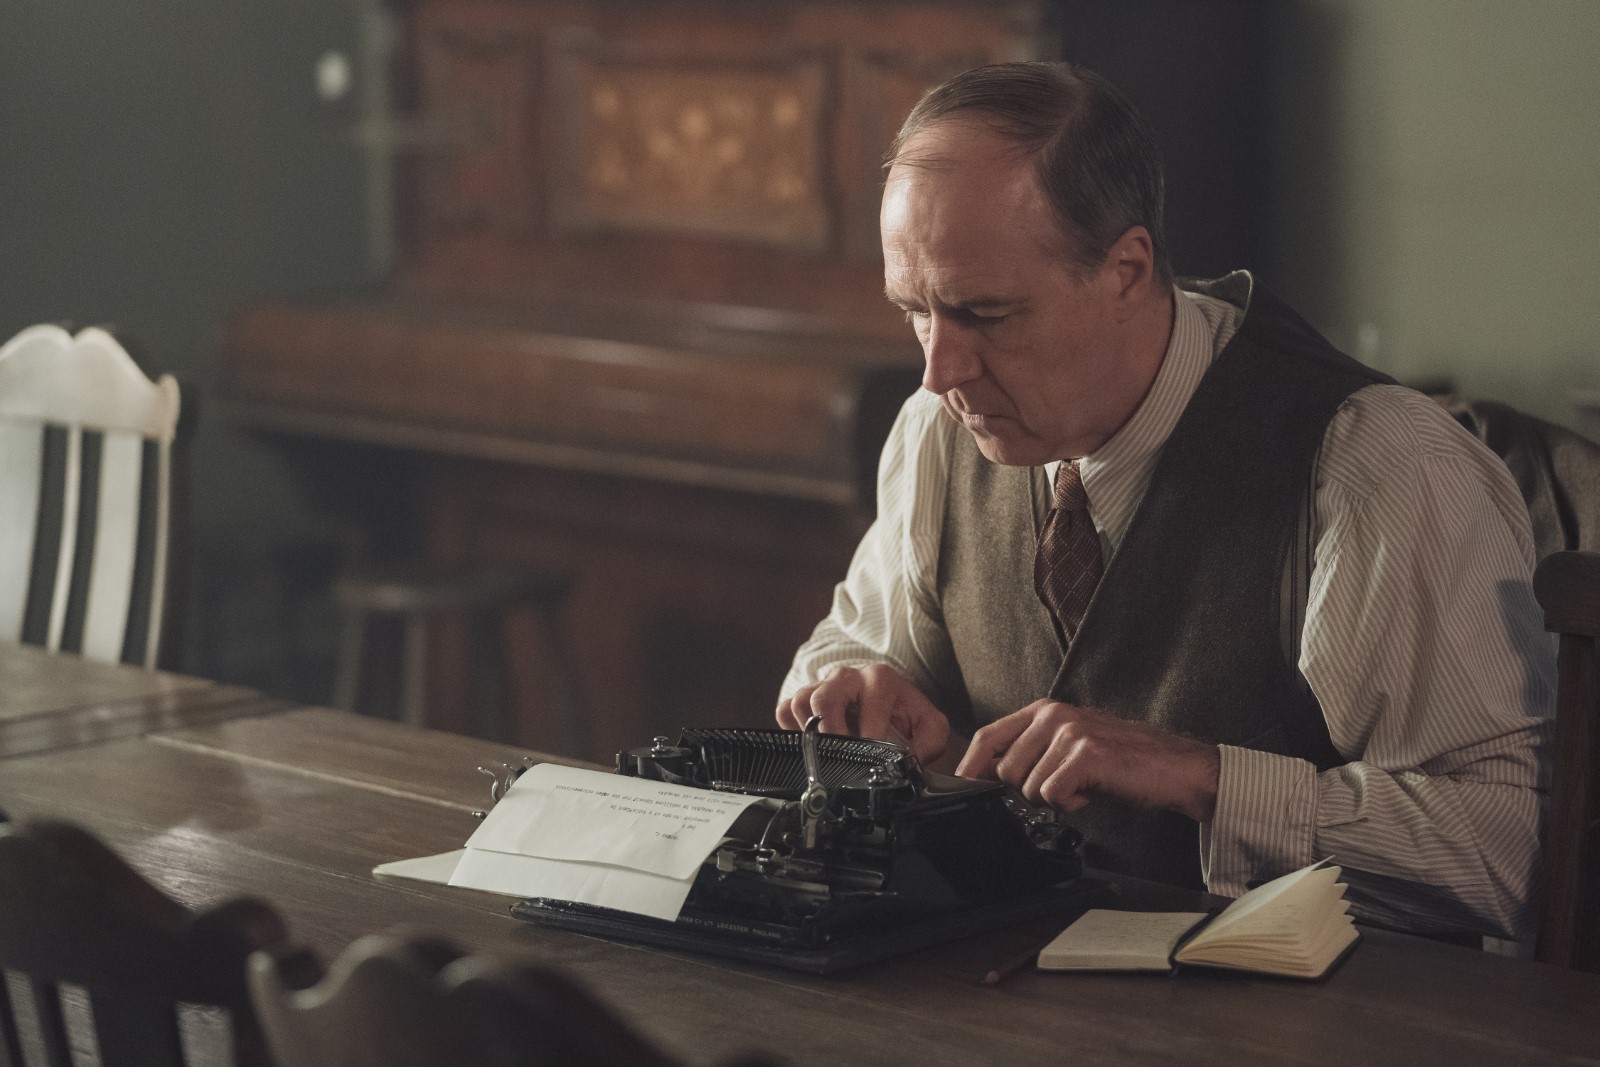 Szenenbild 12 vom Film Downton Abbey 2: Eine neue Ära 